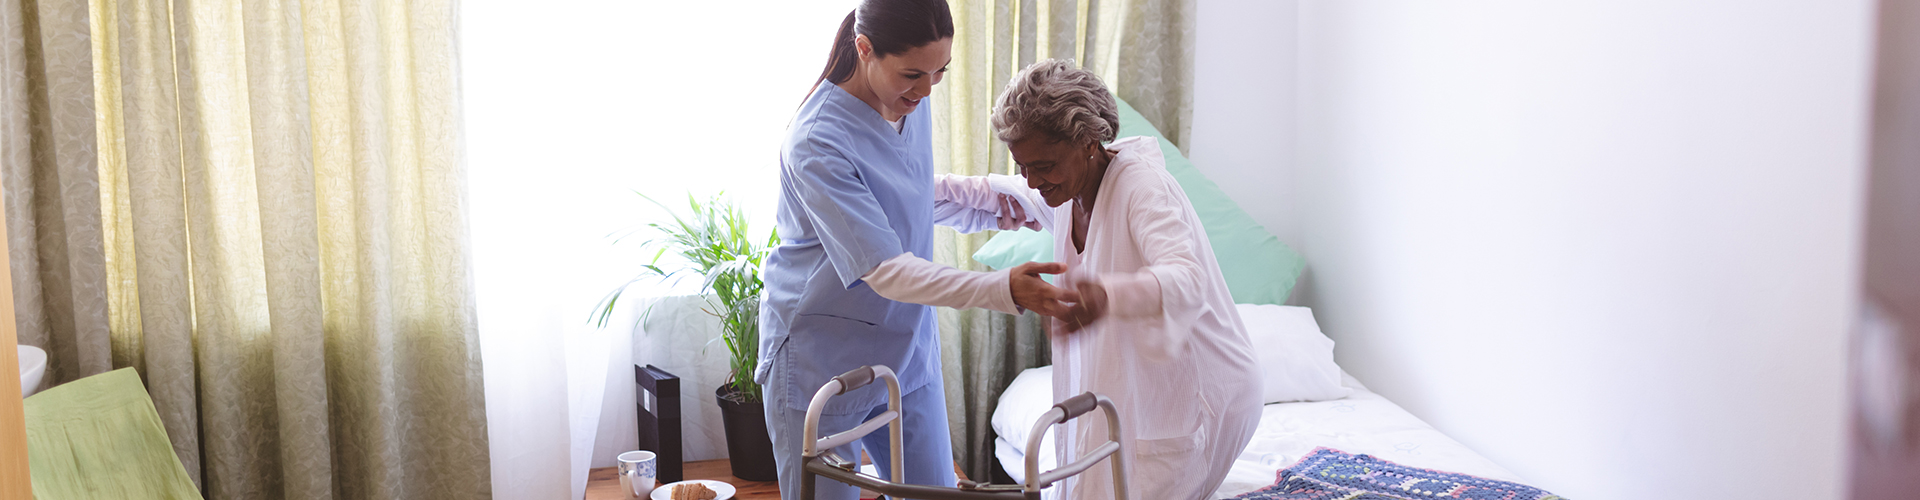 caretaker helps elder lady stand up